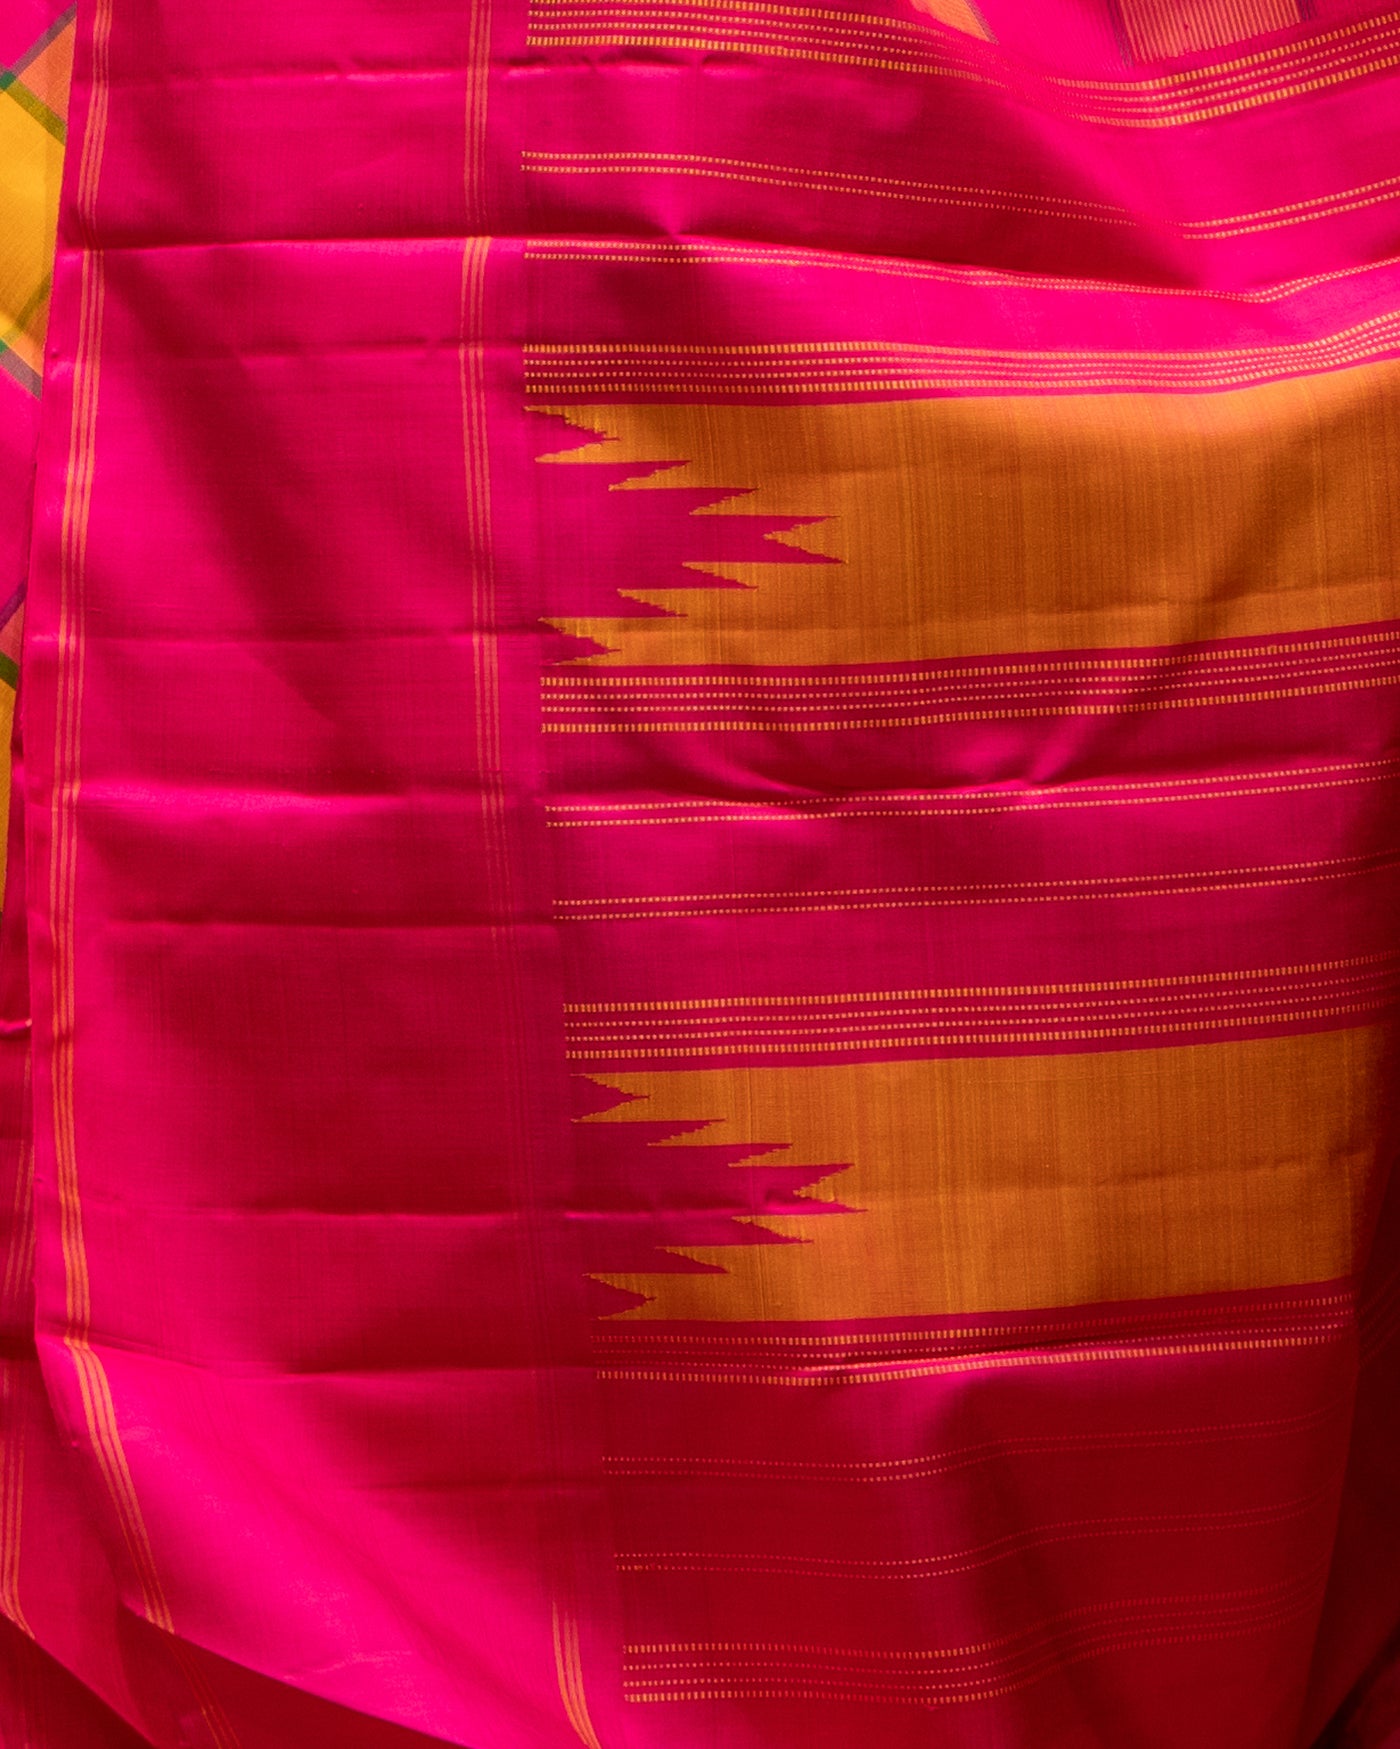 Pink and Mustard Checks Korvai Pure Kanjivaram Silk Sari - Clio Silks